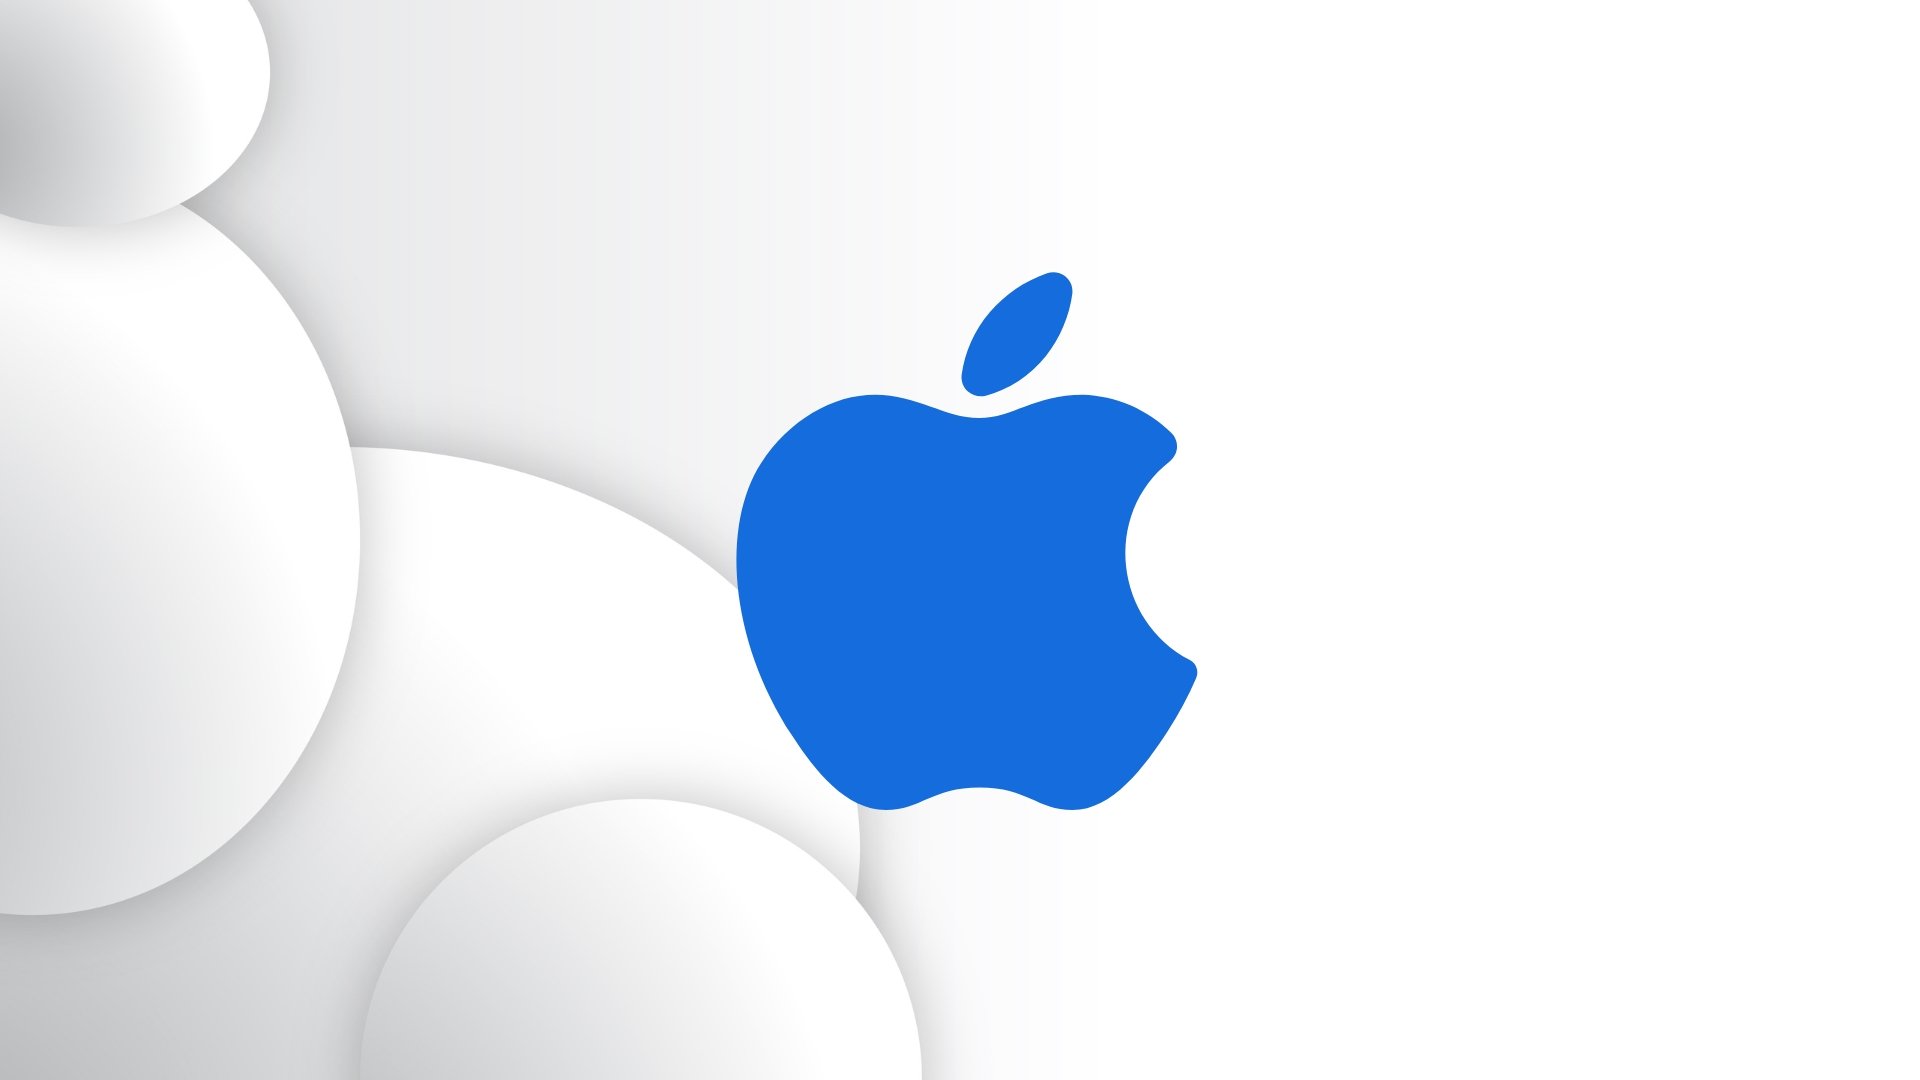 Logo da Apple em azul no centro de uma imagem branca